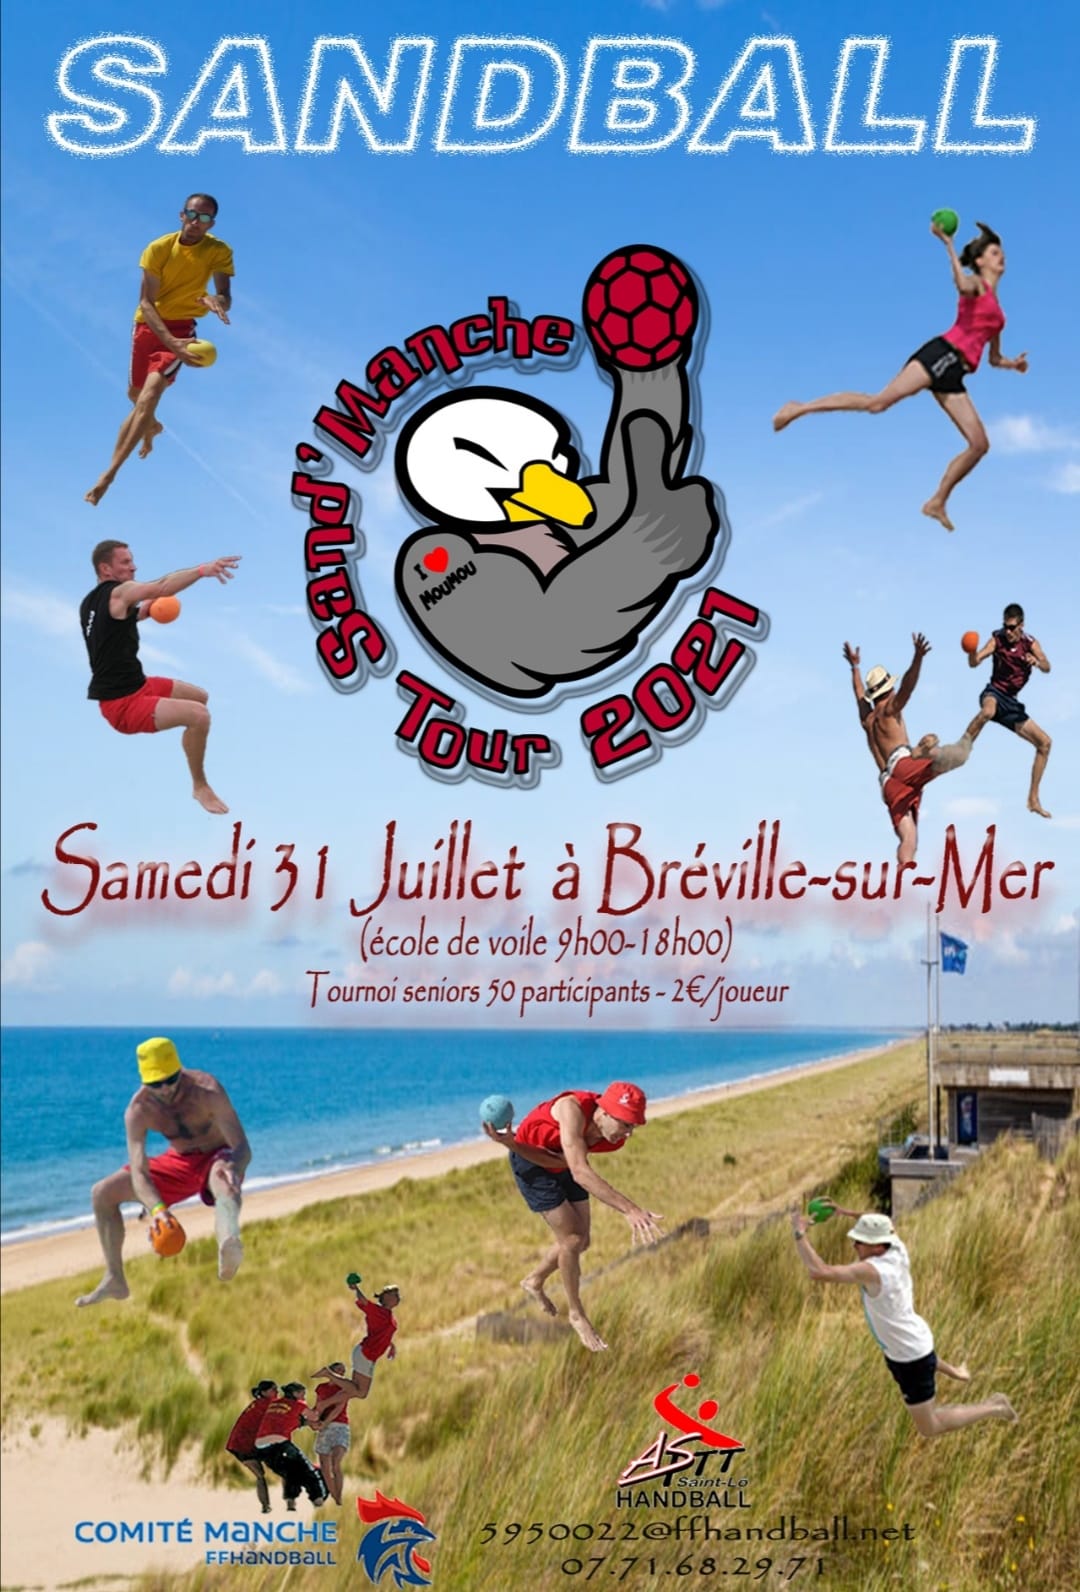 Sand'Manche Tour 2021 : Bréville-sur-Mer